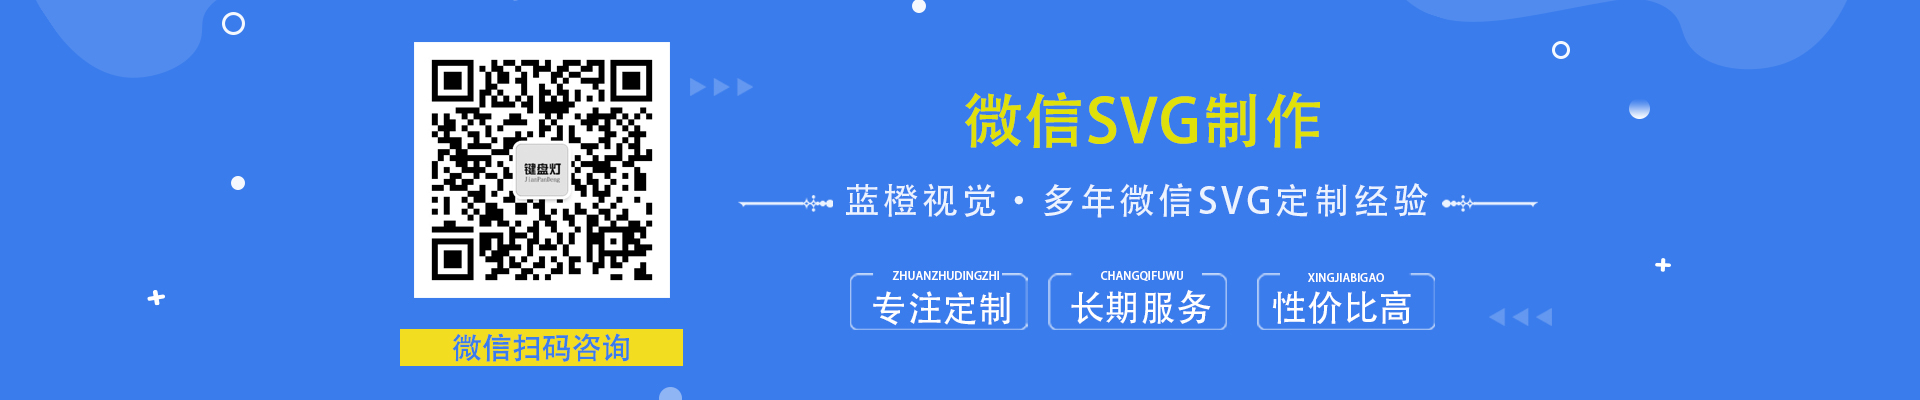 微信SVG设计公司